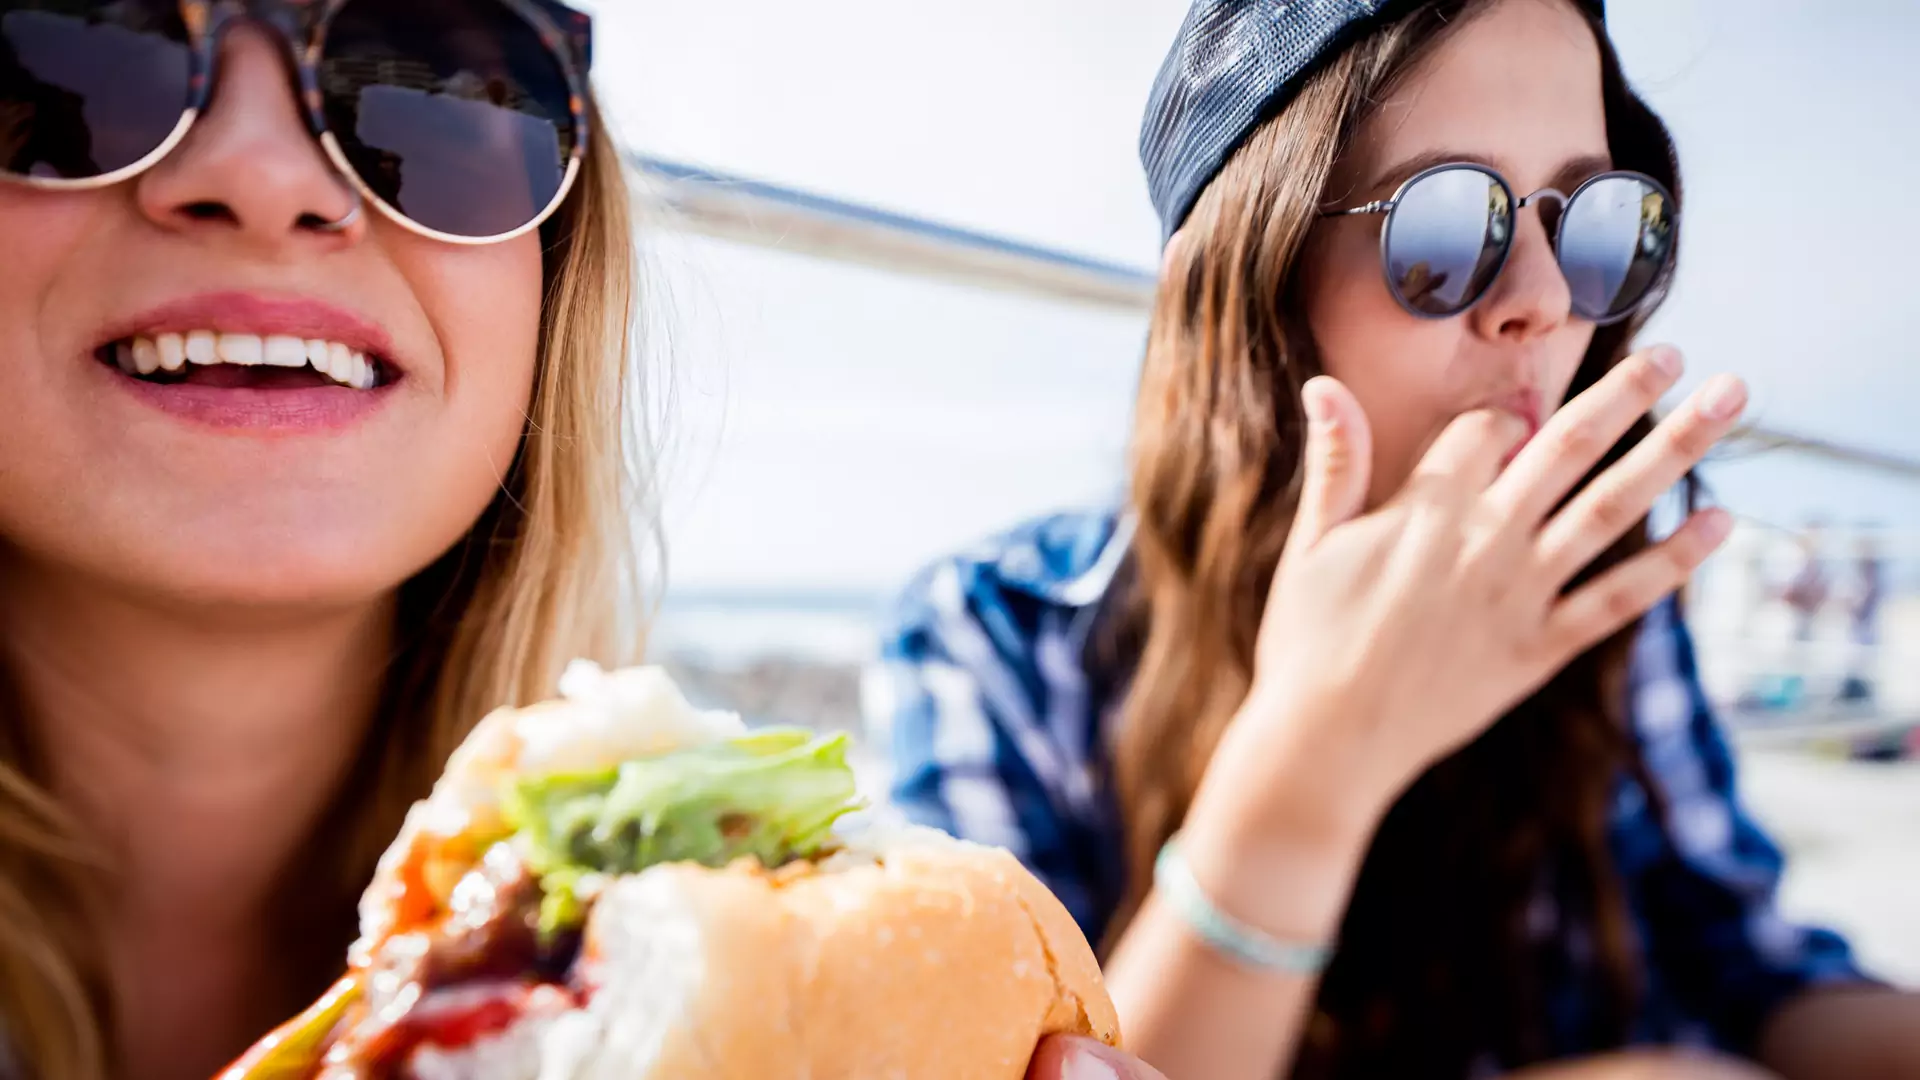 Naukowcy twierdzą, że zamawiamy niezdrowe jedzenie, aby nie sprawić przykrości znajomym